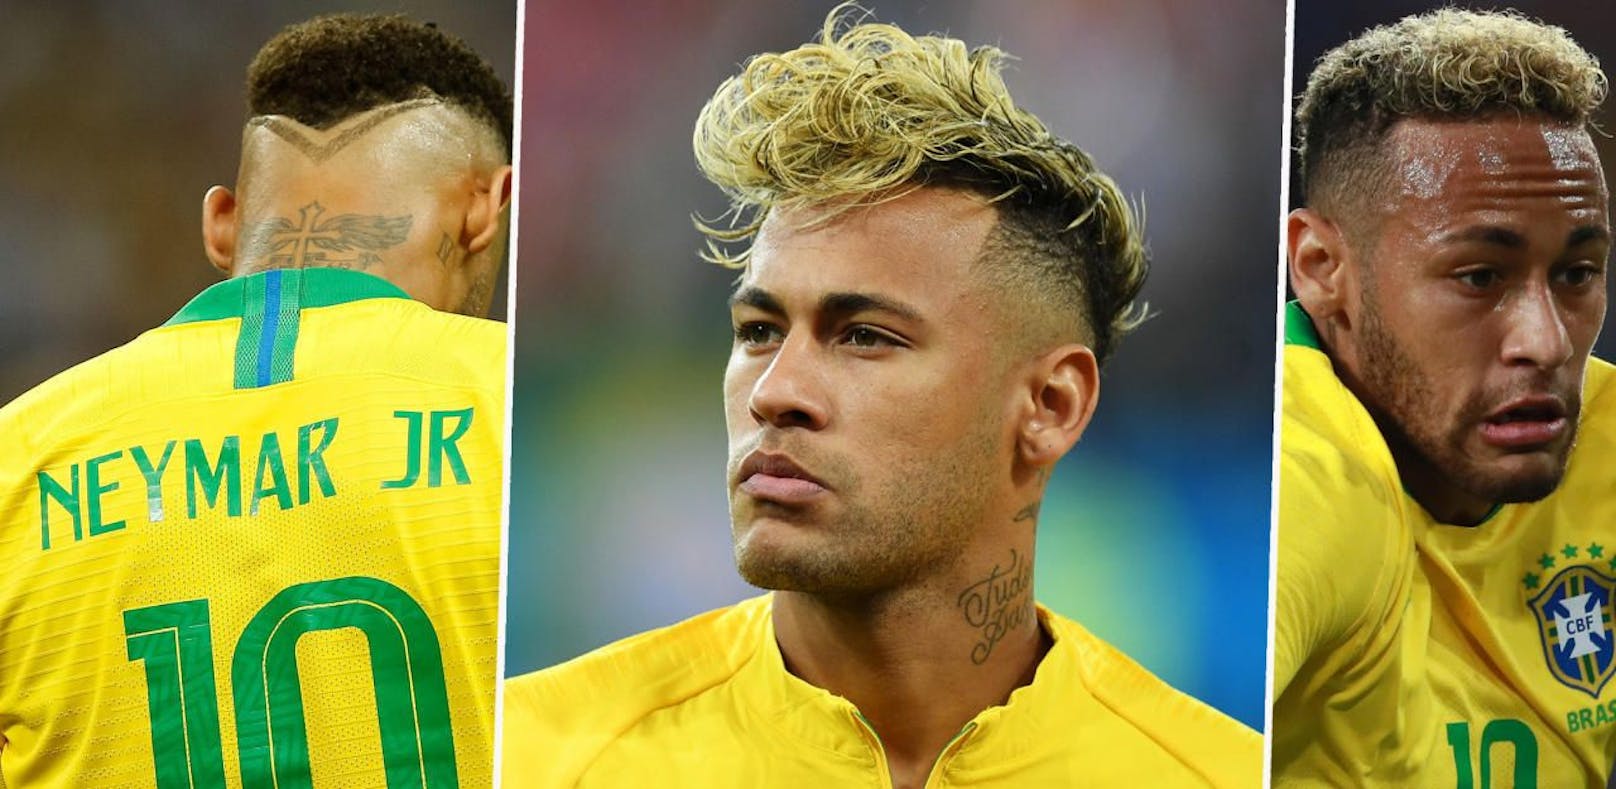 Neymar Jr. experimentierte bei der WM mit seinen Haaren. Der Spaghetti-Look in der Mitte machte gegen die Schweiz den Auftakt. Es folgte die kürzere Locken-Variante in blond gegen Serbien (rechts). Beim Aus gegen Belgien waren die Haare dunkel, hinten war ein Muster einrasiert (links).